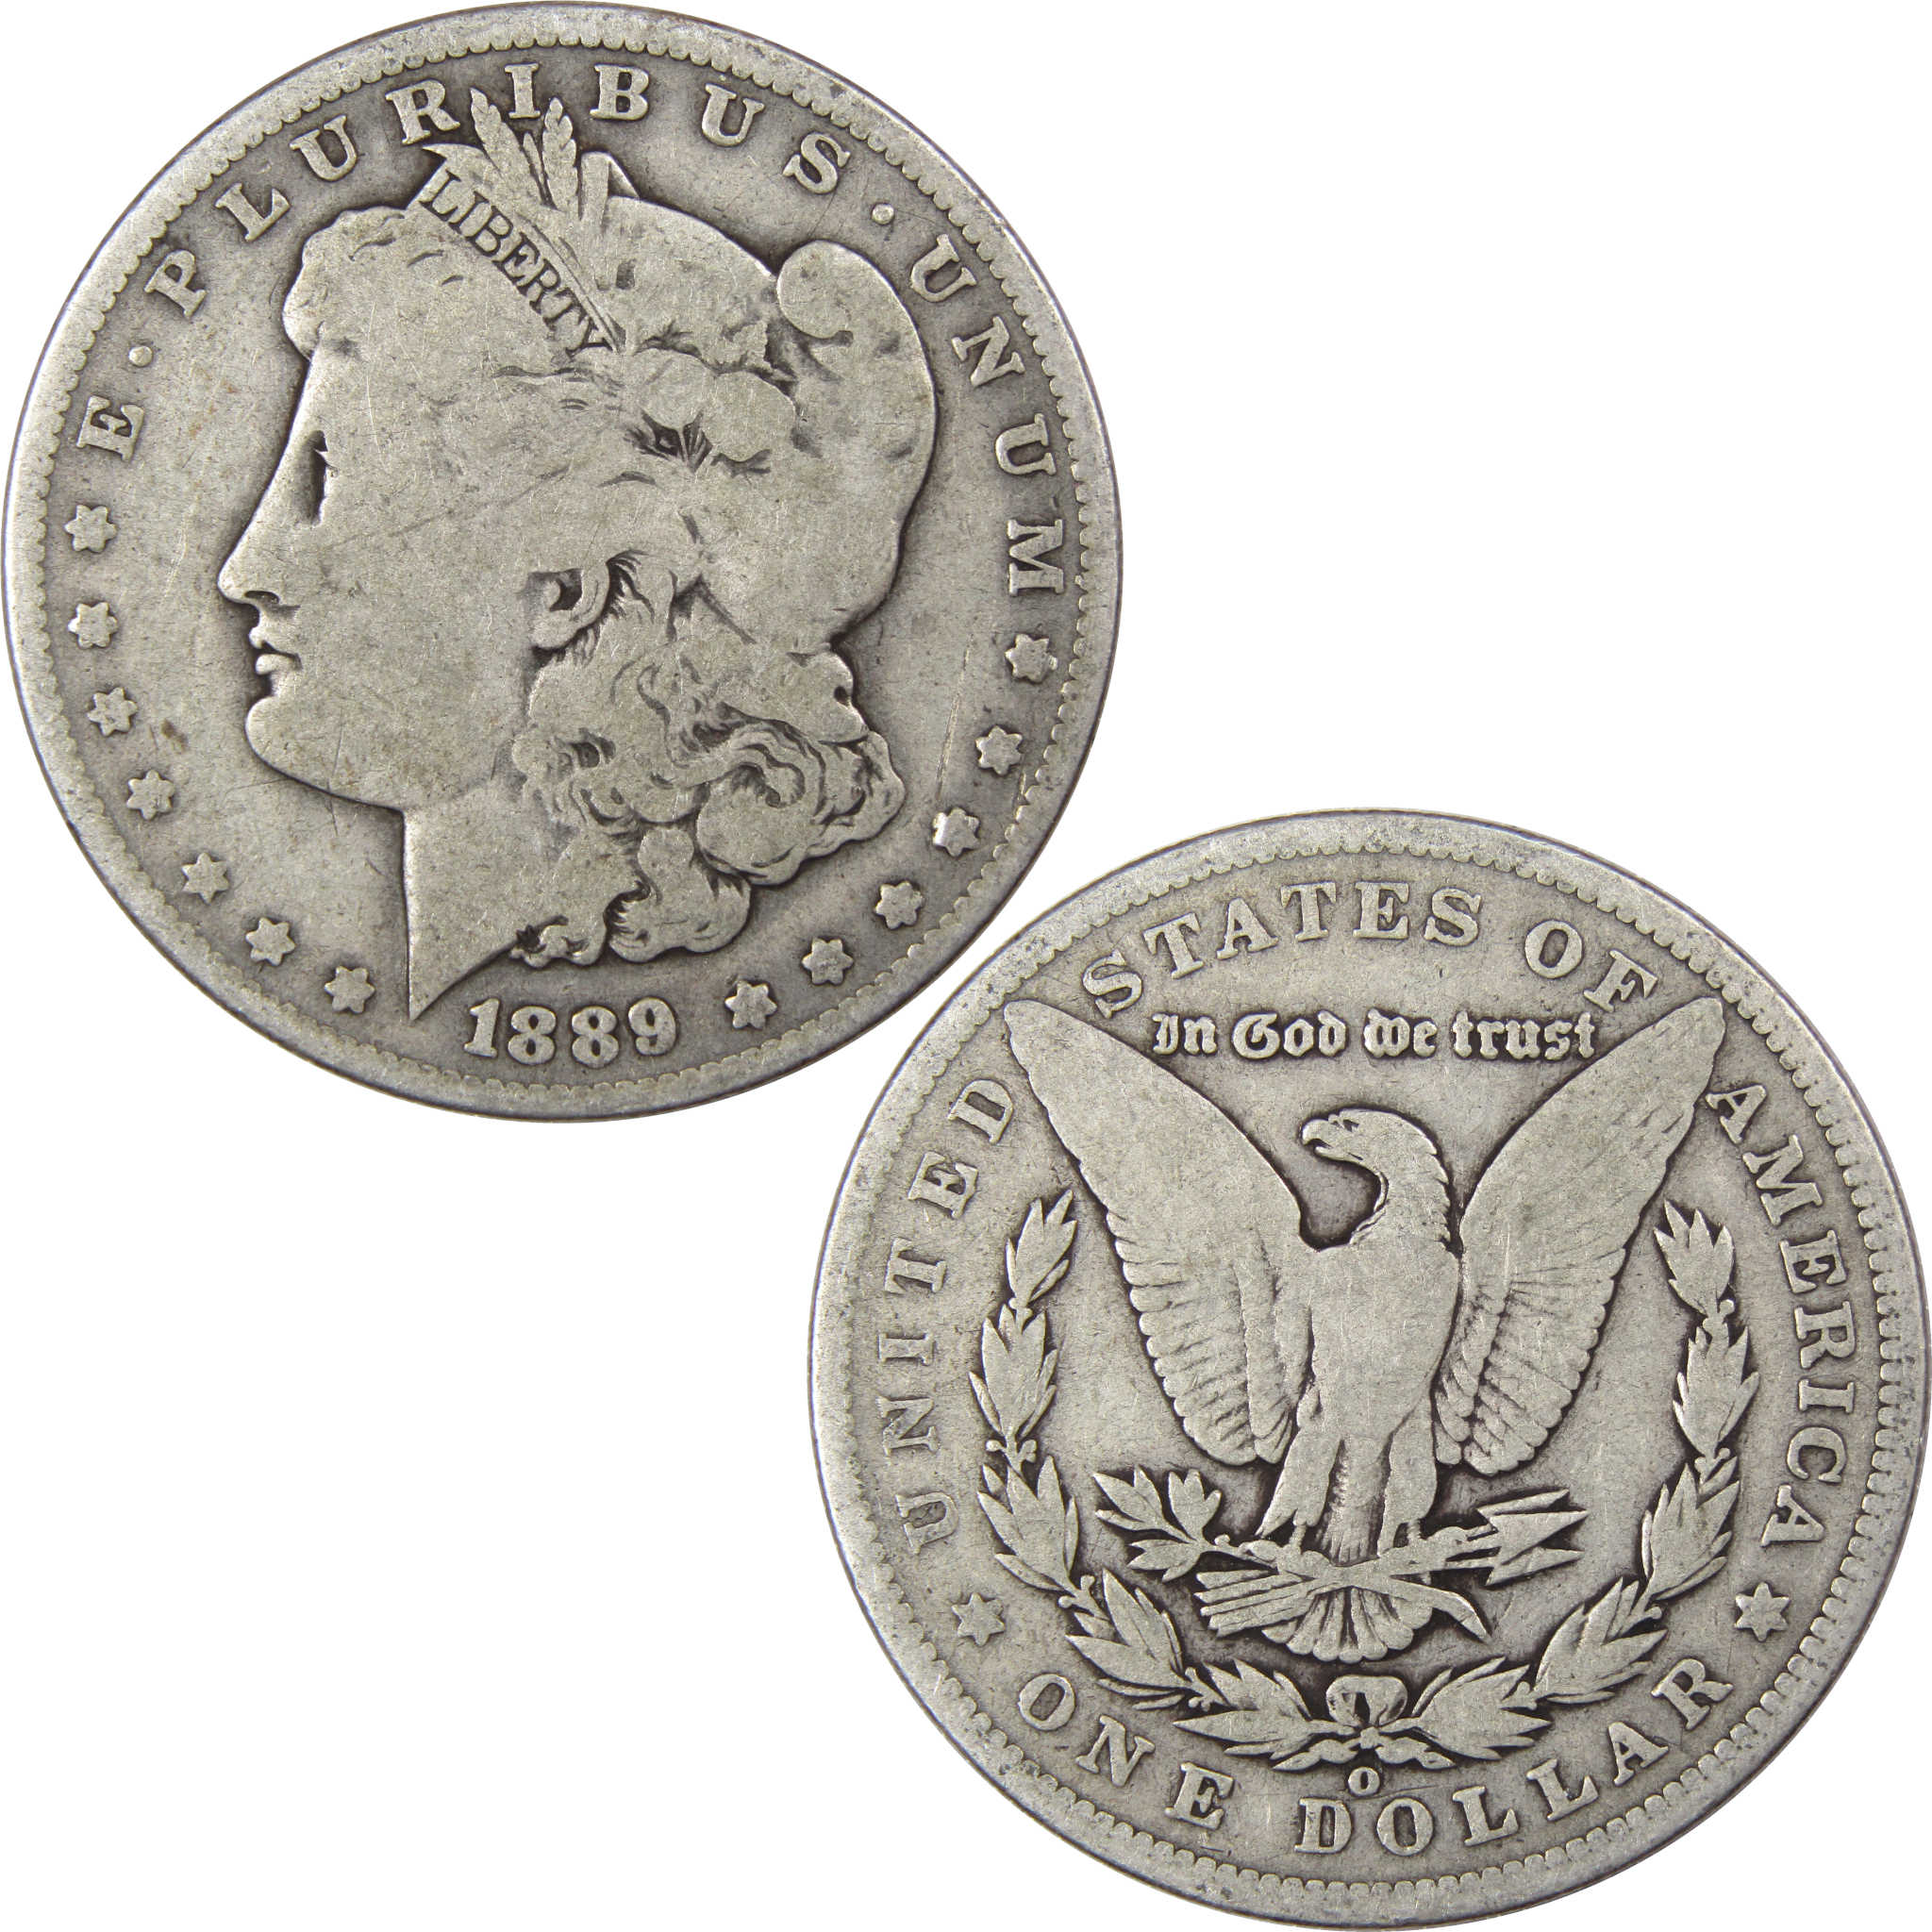 1889 O Morgan Dollar VG Very Good 90% Silver US Coin SKU:I1859 - Morgan coin - Morgan silver dollar - Morgan silver dollar for sale - Profile Coins &amp; Collectibles